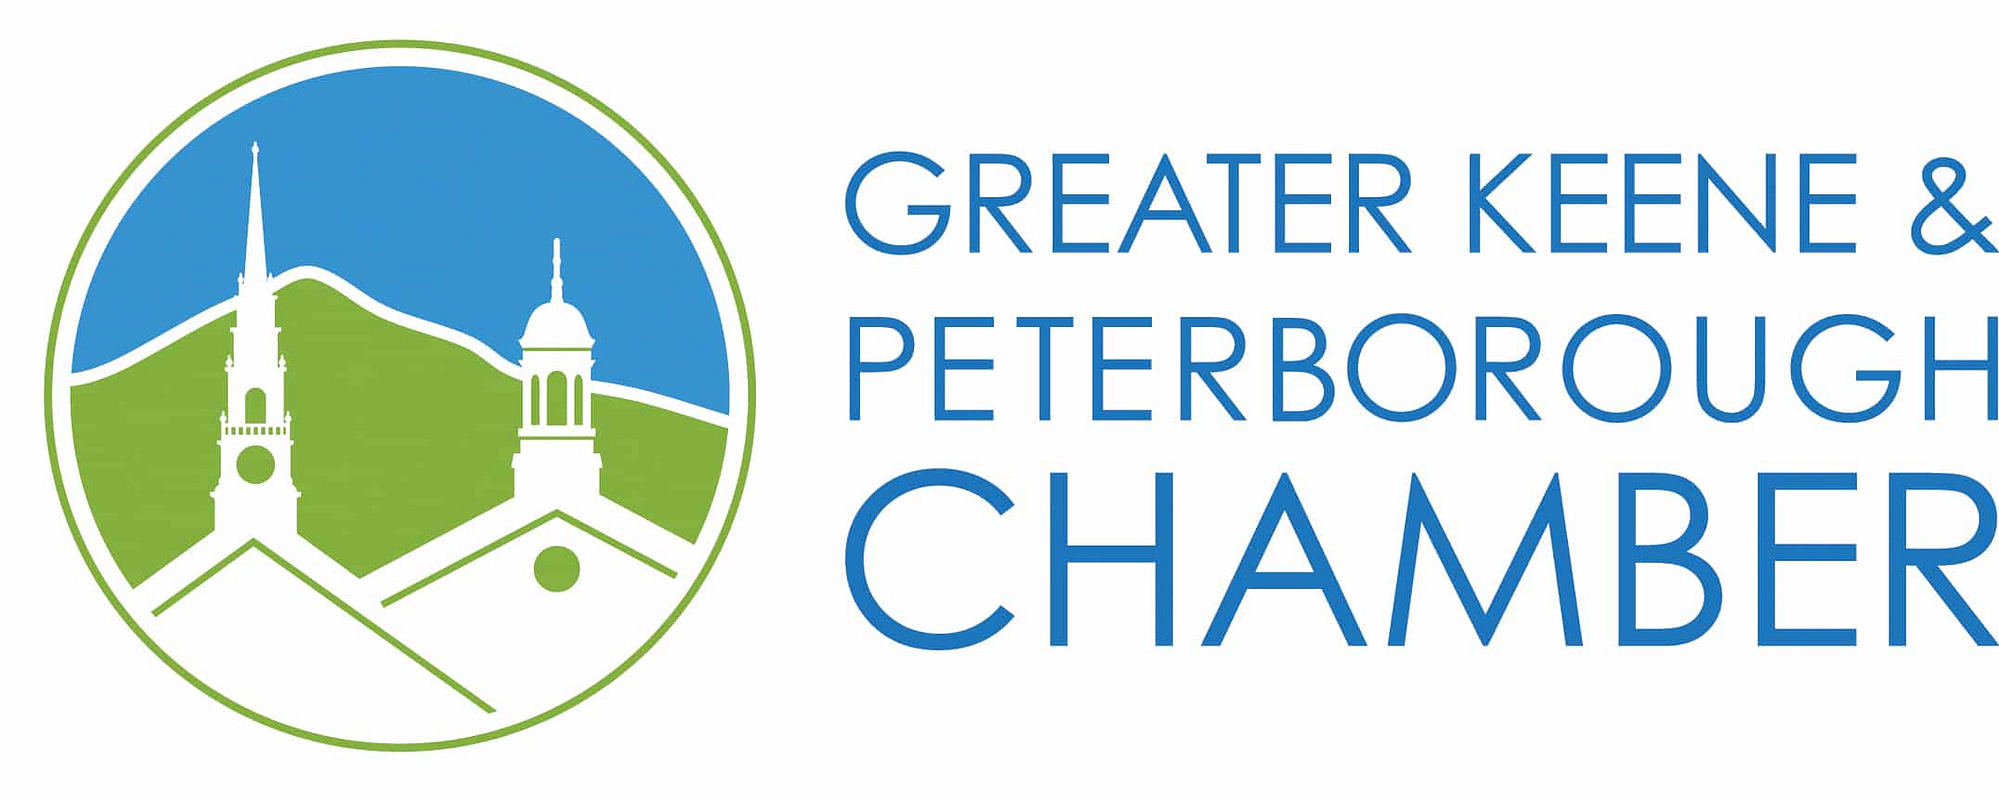 Greater Keene & Peterborough Chamber